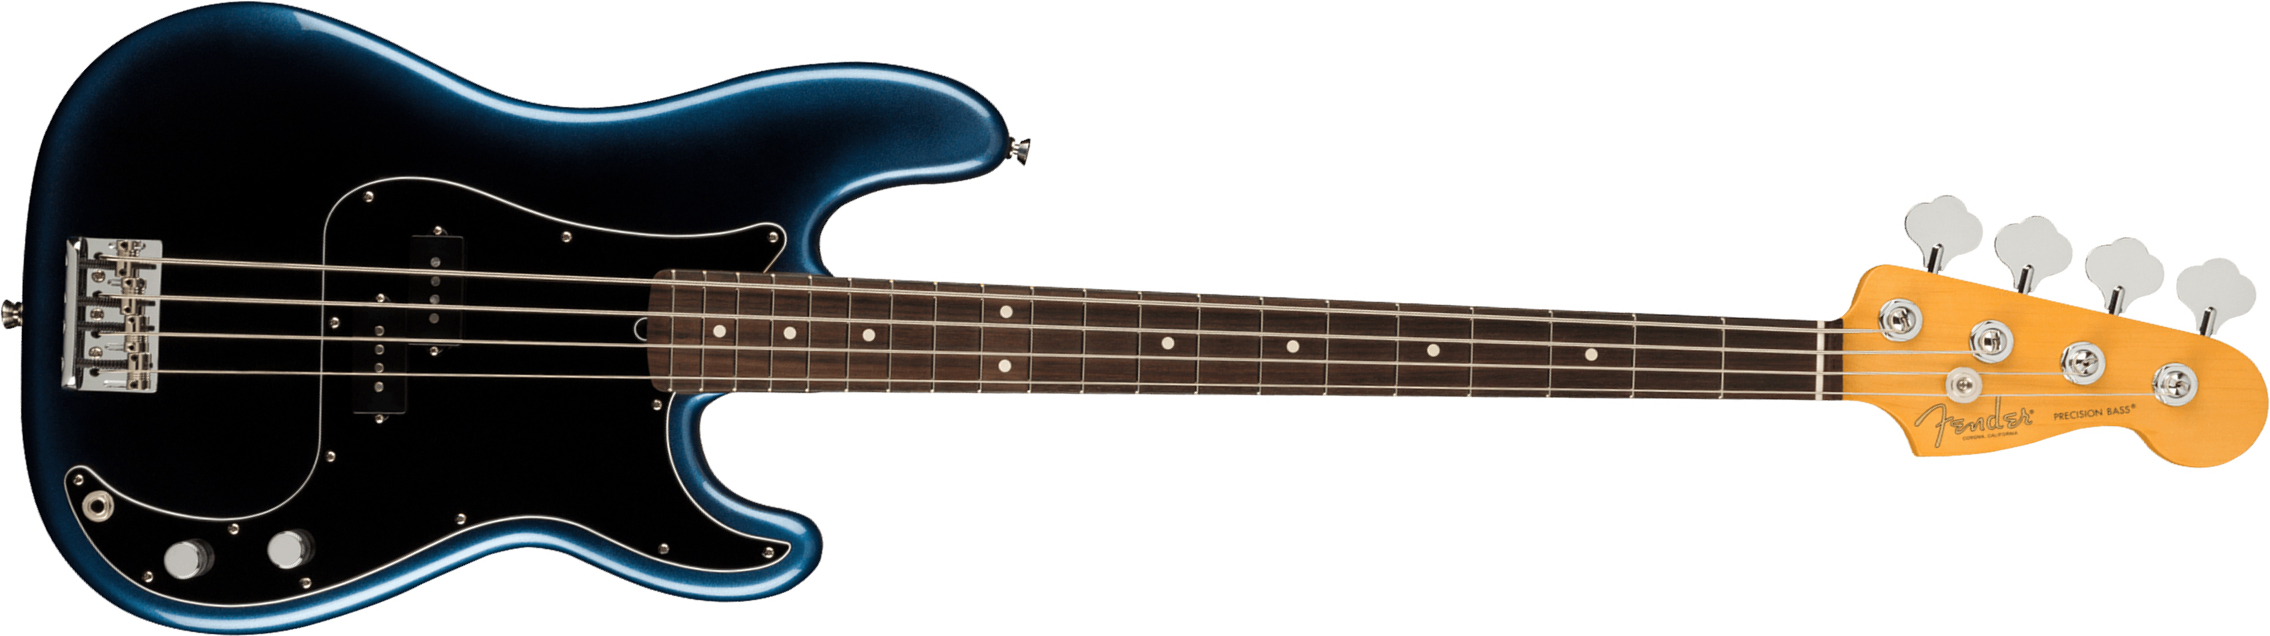 Fender Precision Bass American Professional Ii Usa Rw - Dark Night - Bajo eléctrico de cuerpo sólido - Main picture